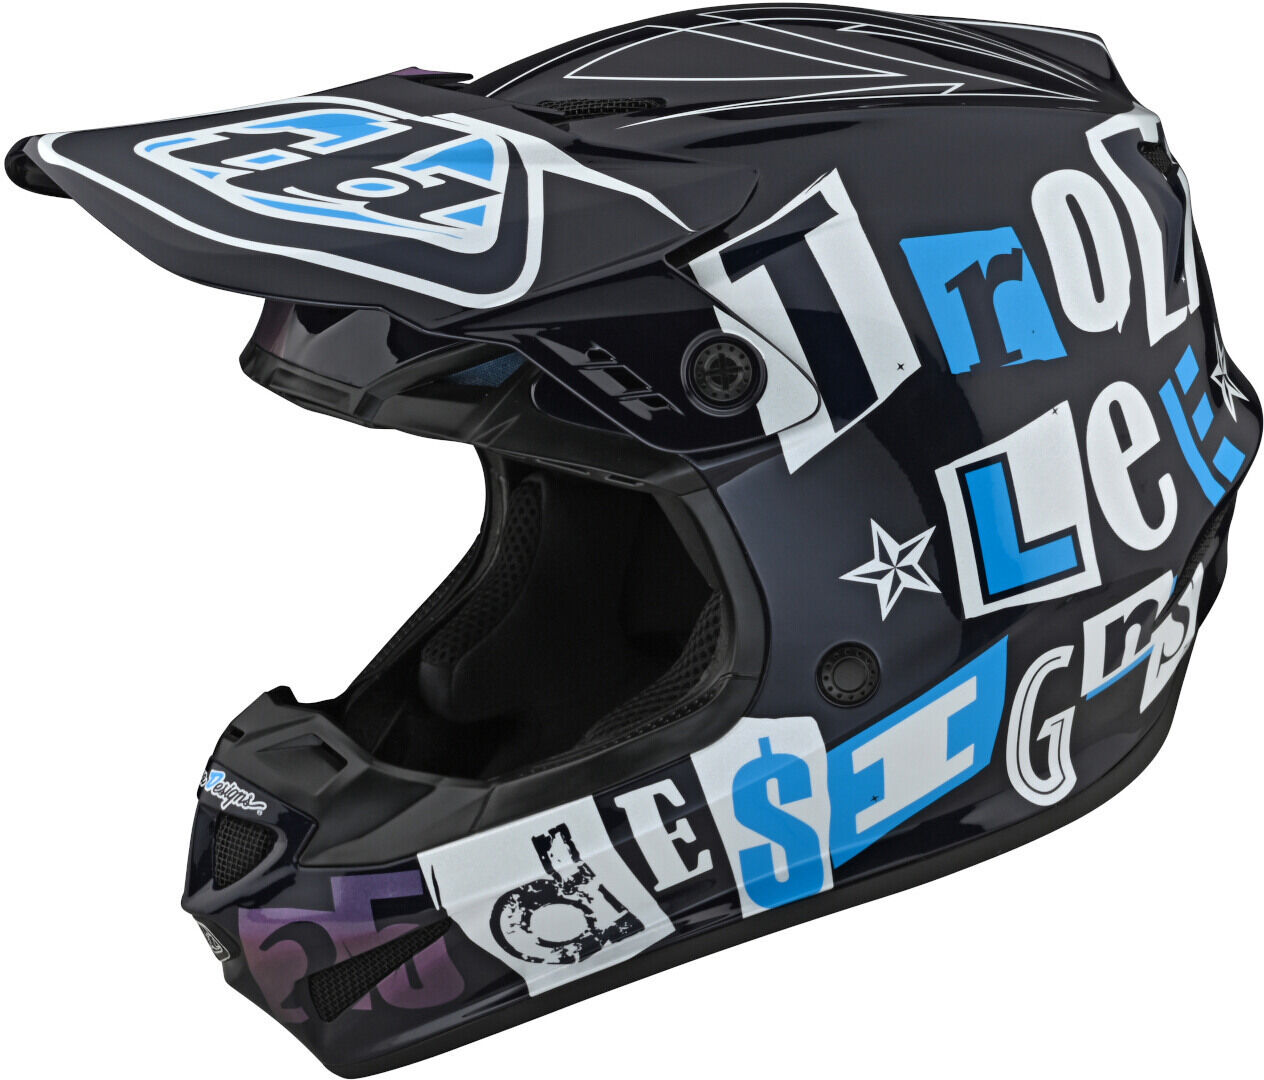 Lee Troy Lee Designs Gp Anarchy Motocross Helmet  - Black White Blue